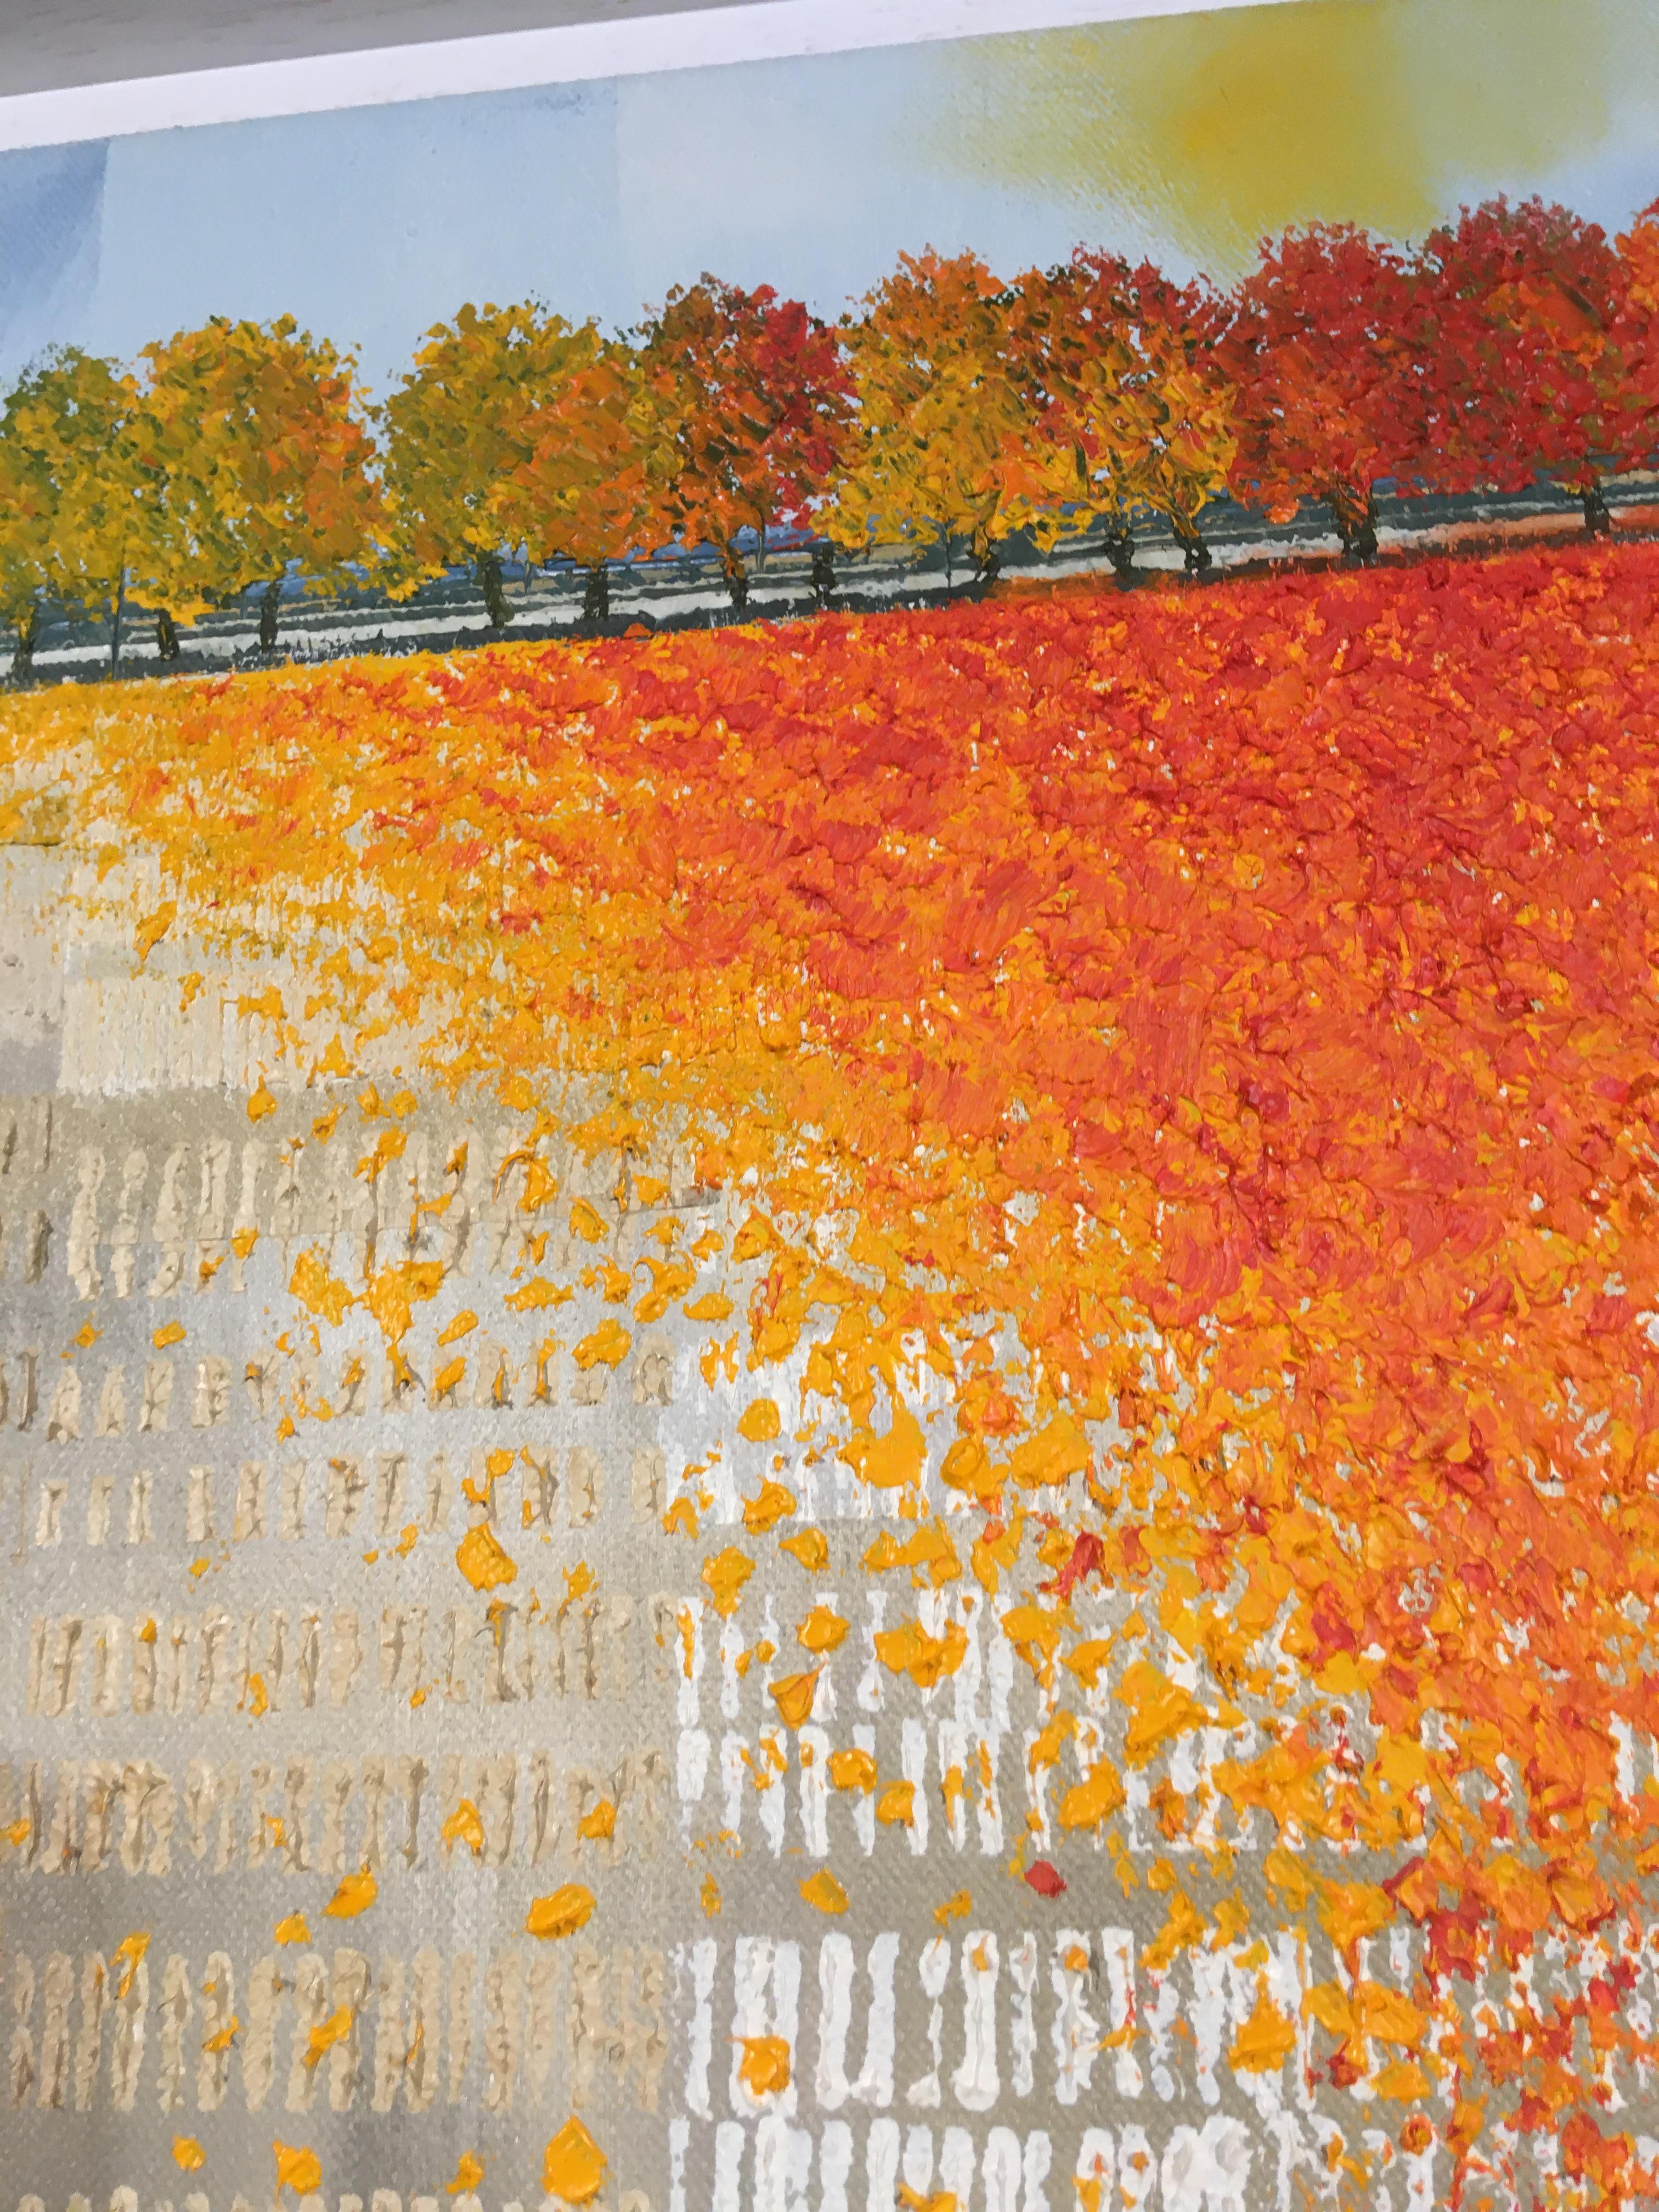 Autumn’s Carpet - contemporary landscape horizon fields autumn trees painting - Black Landscape Painting by Glynne James